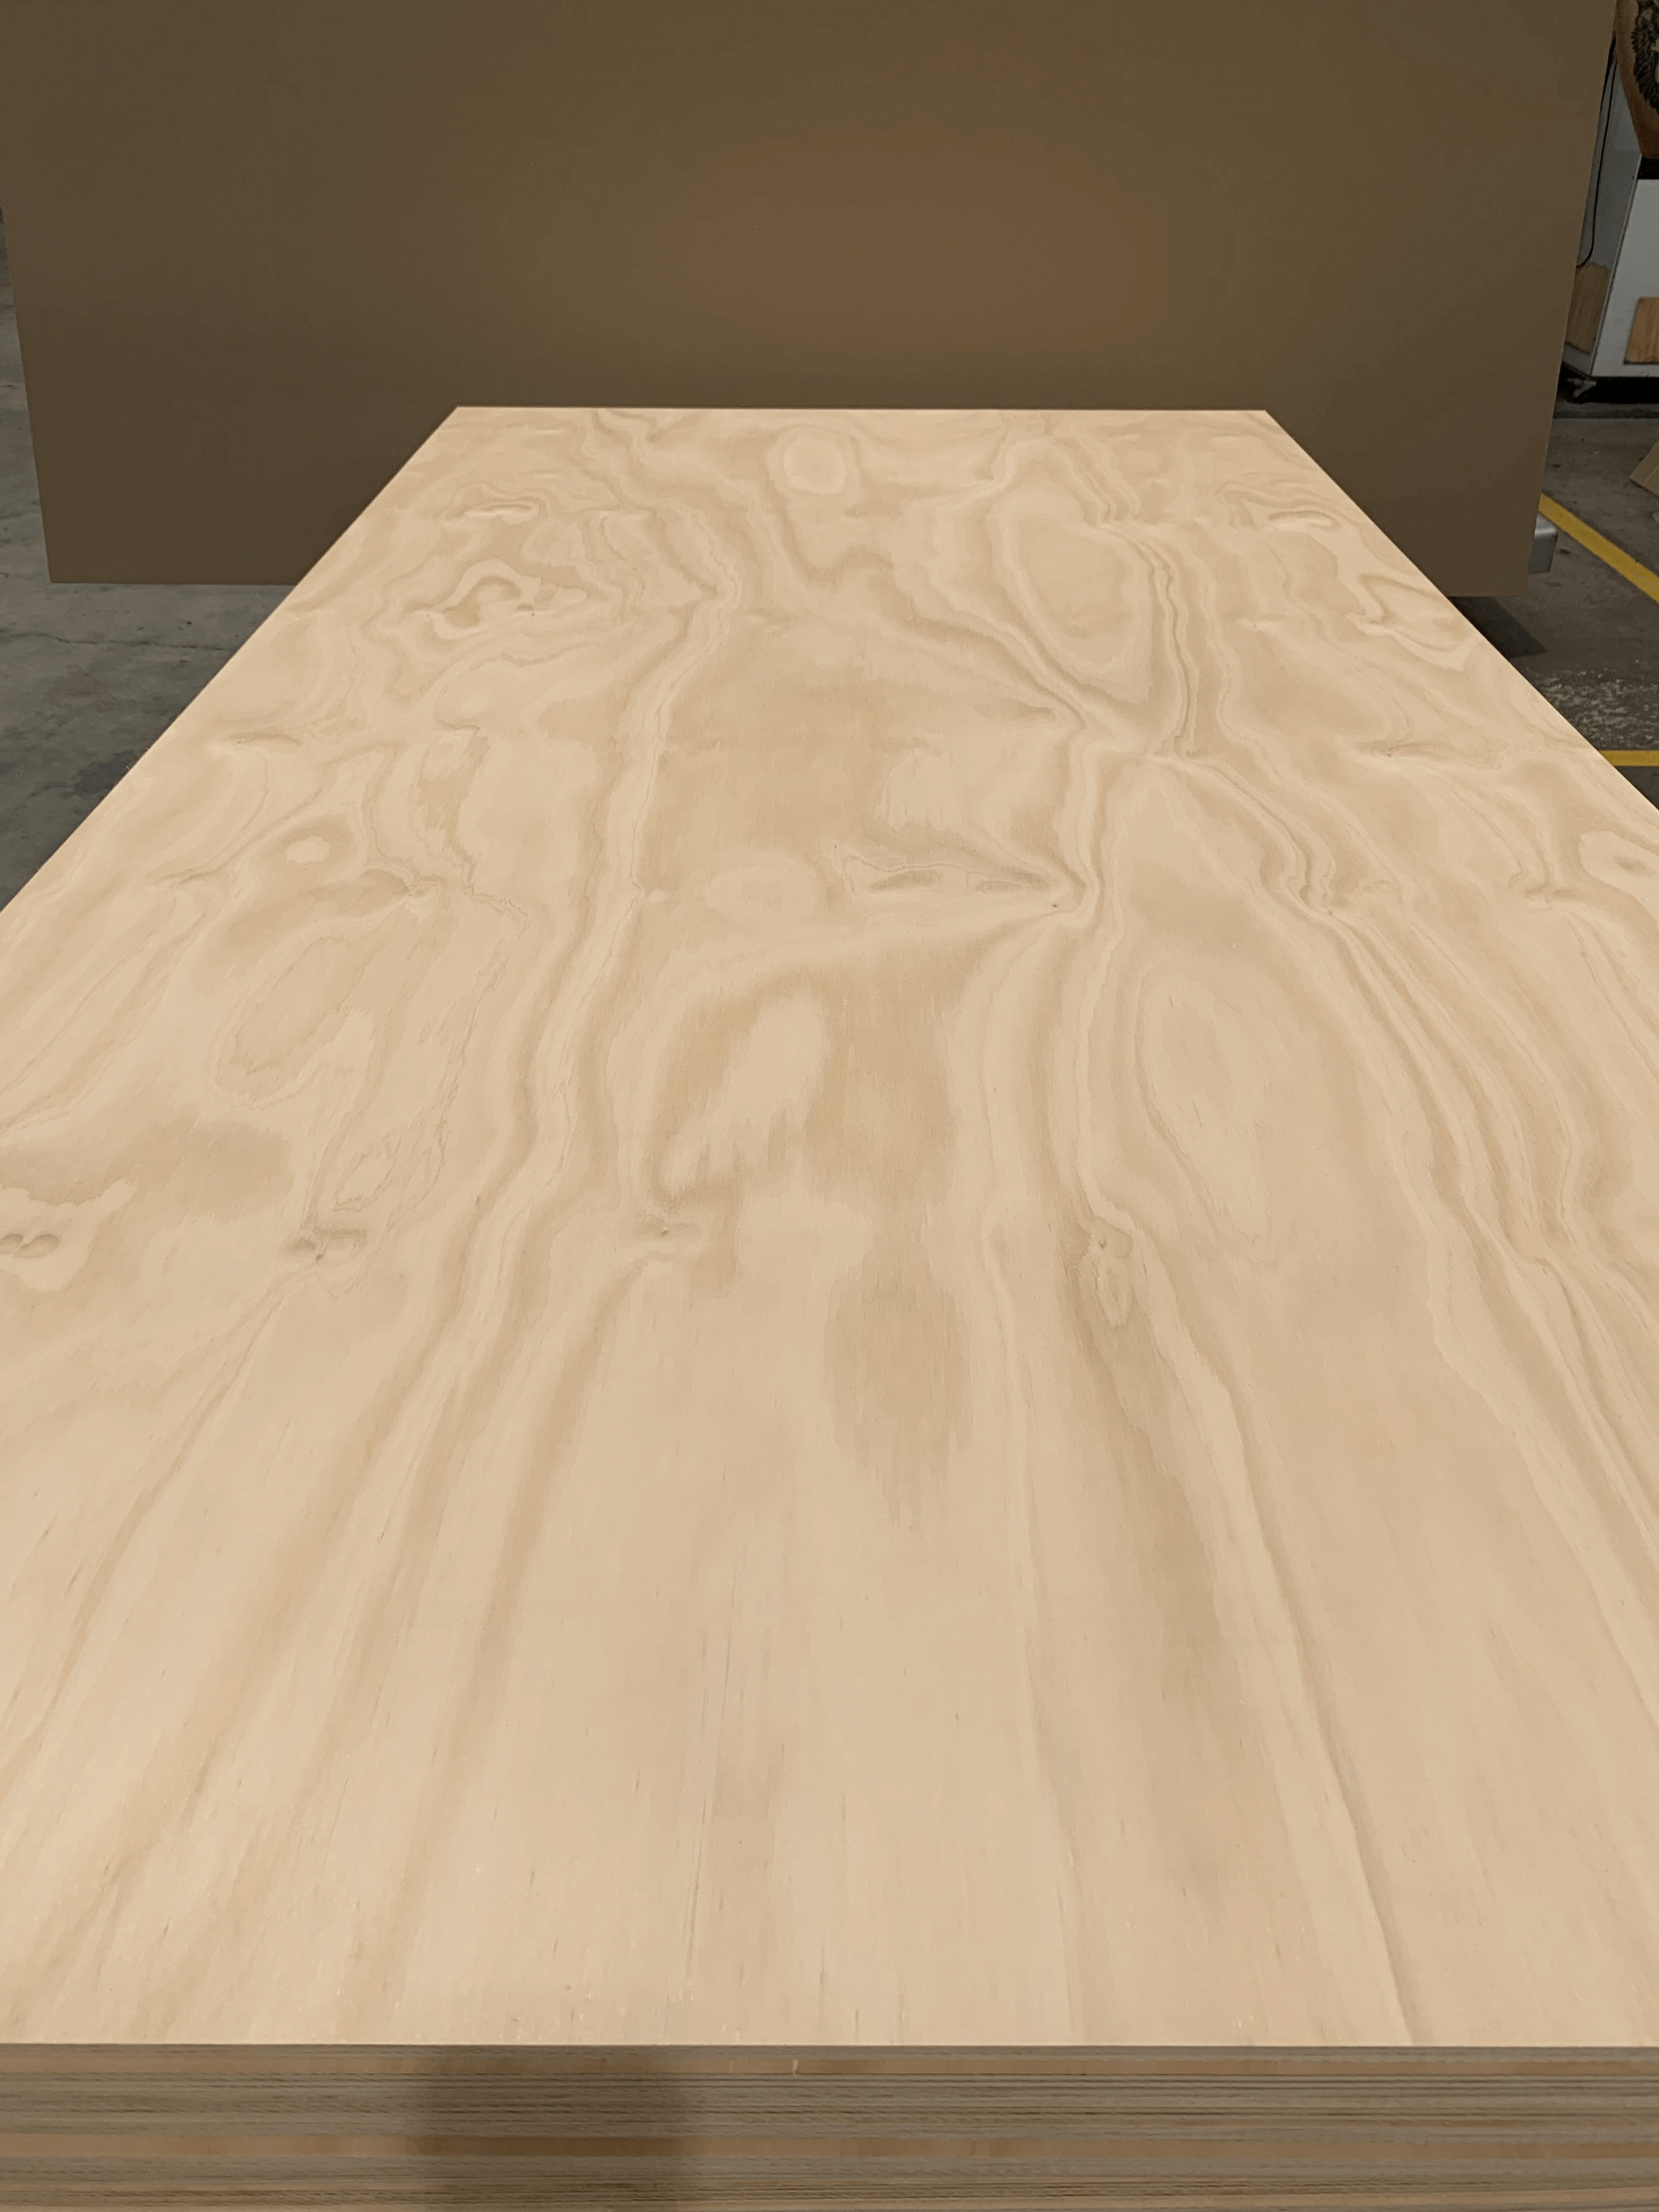 AC Hoop Pine Plywood - Austral premium plywood